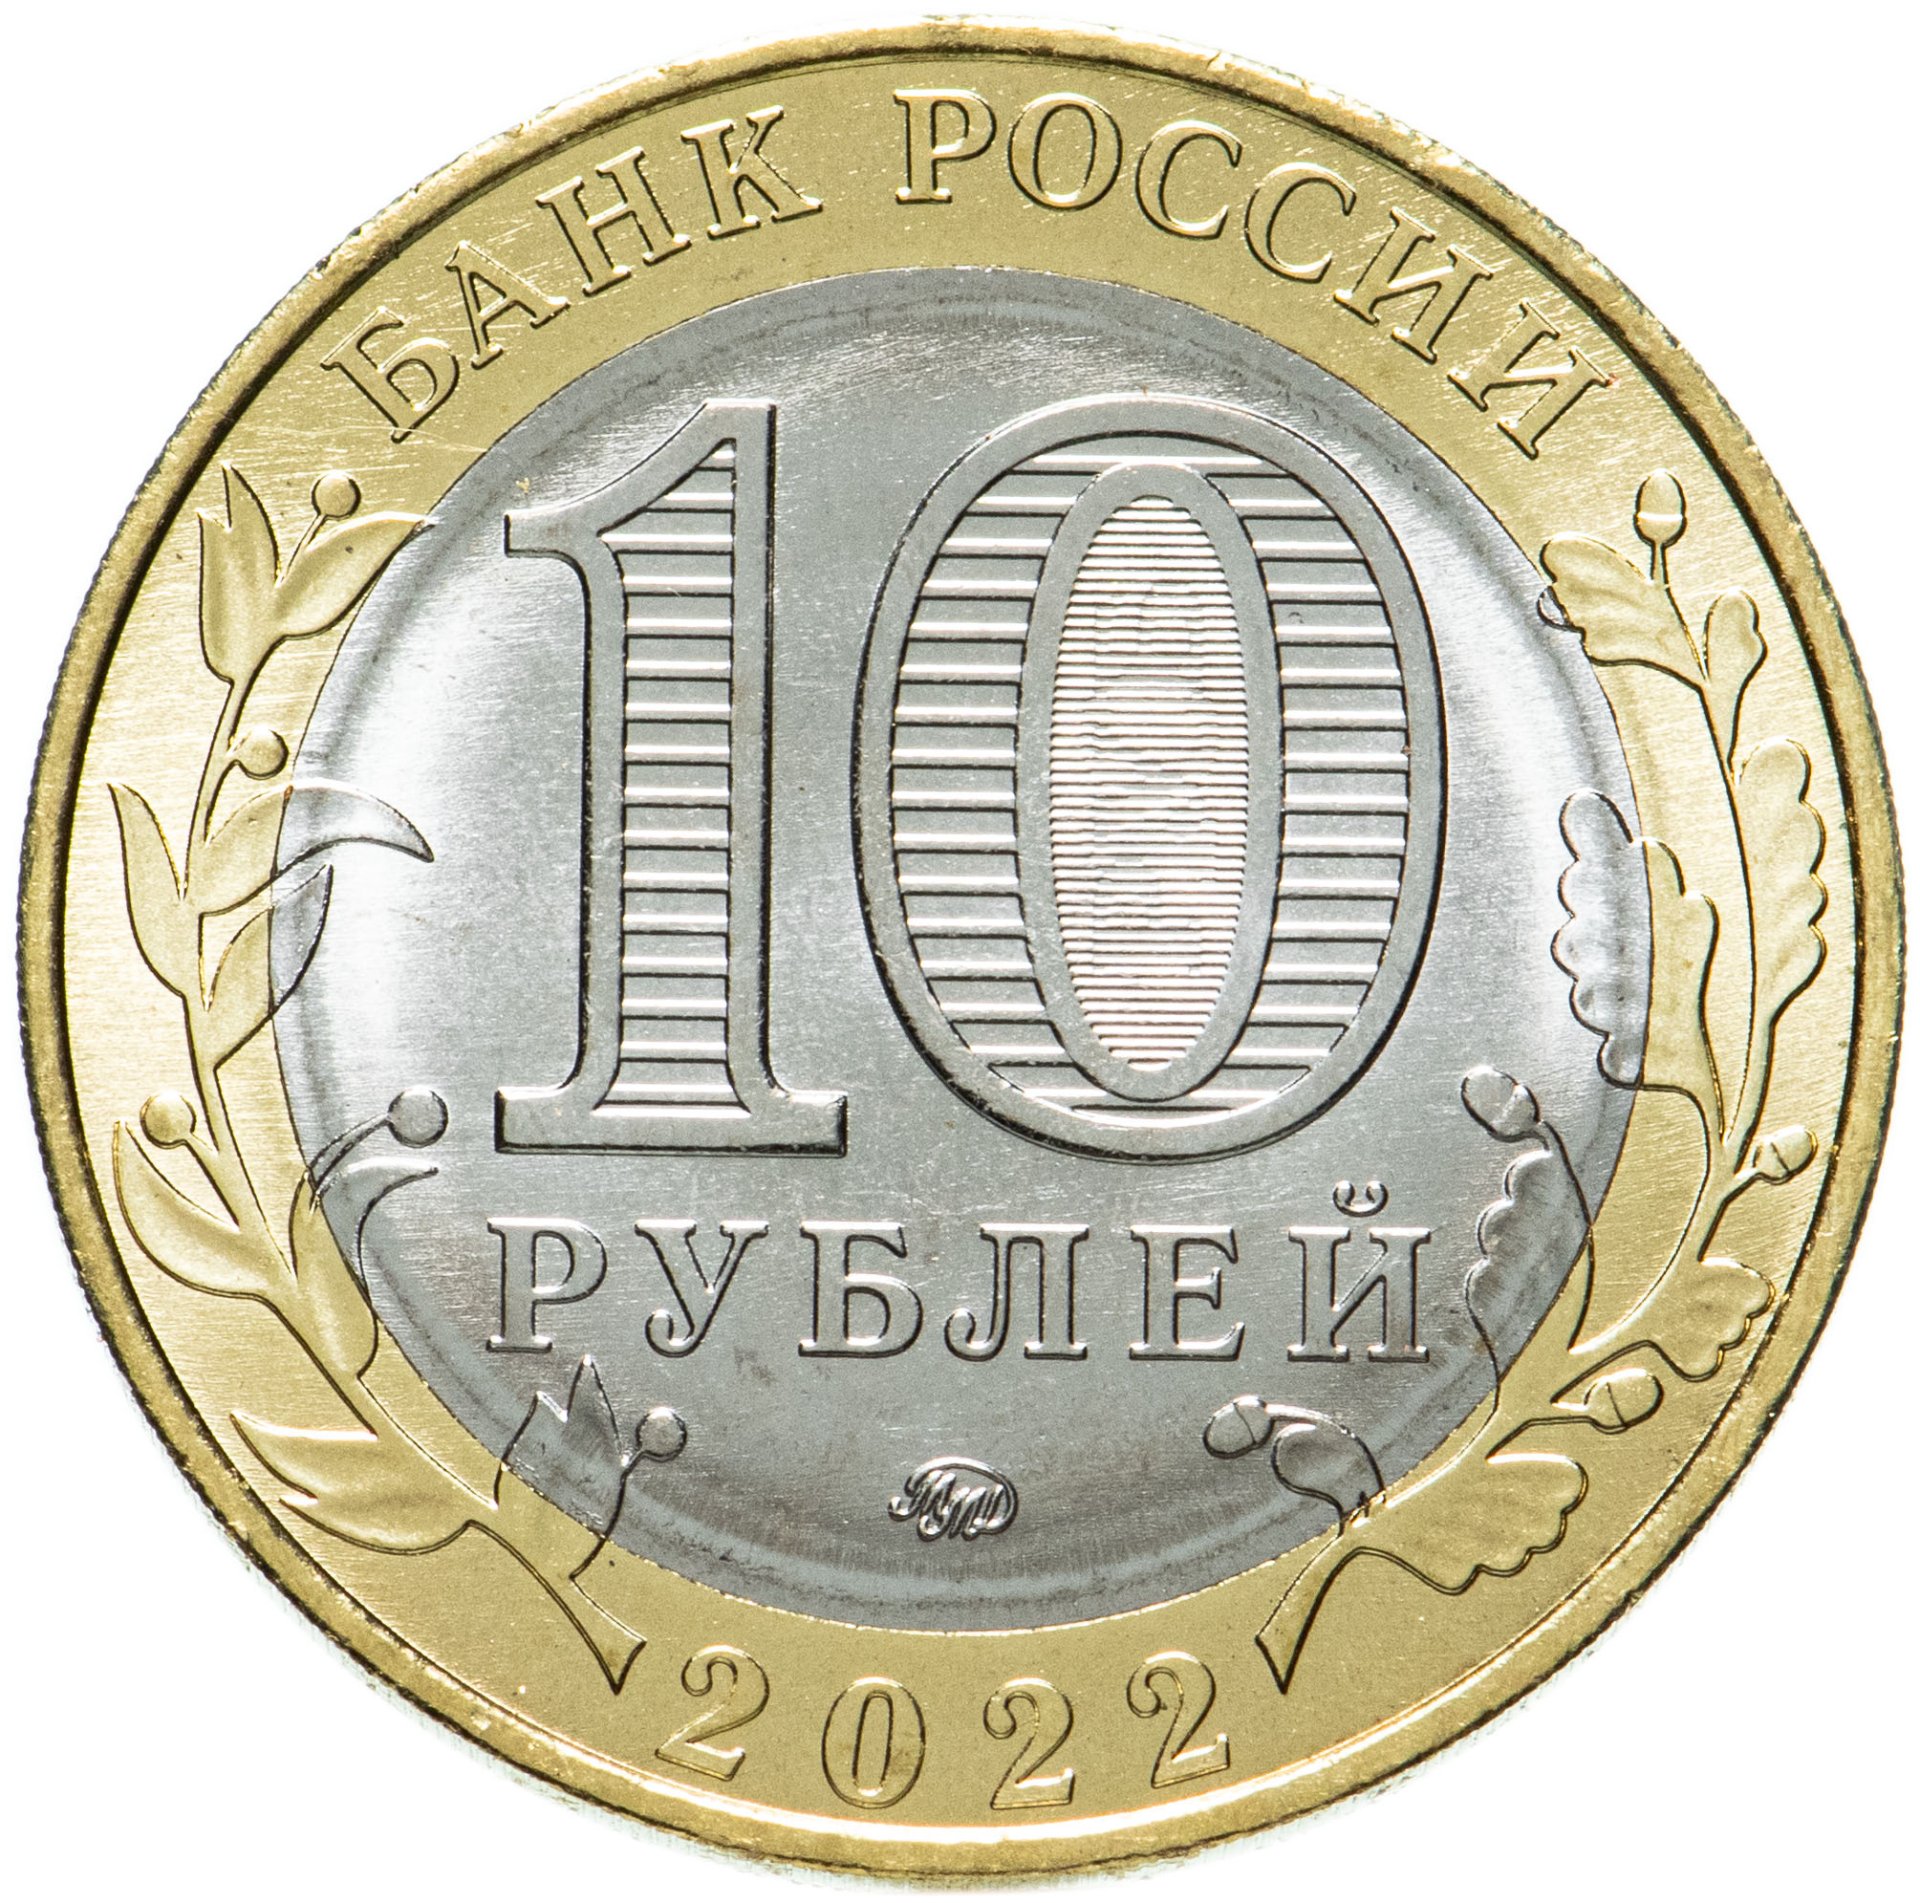 Сколько стоят 10 руб монеты. 10 Рублей 2020 Козельск. 10 Рублей Боровичи 2021. 10 Рублей 2022 Ижевск. Монета Городец 10 рублей 2022.